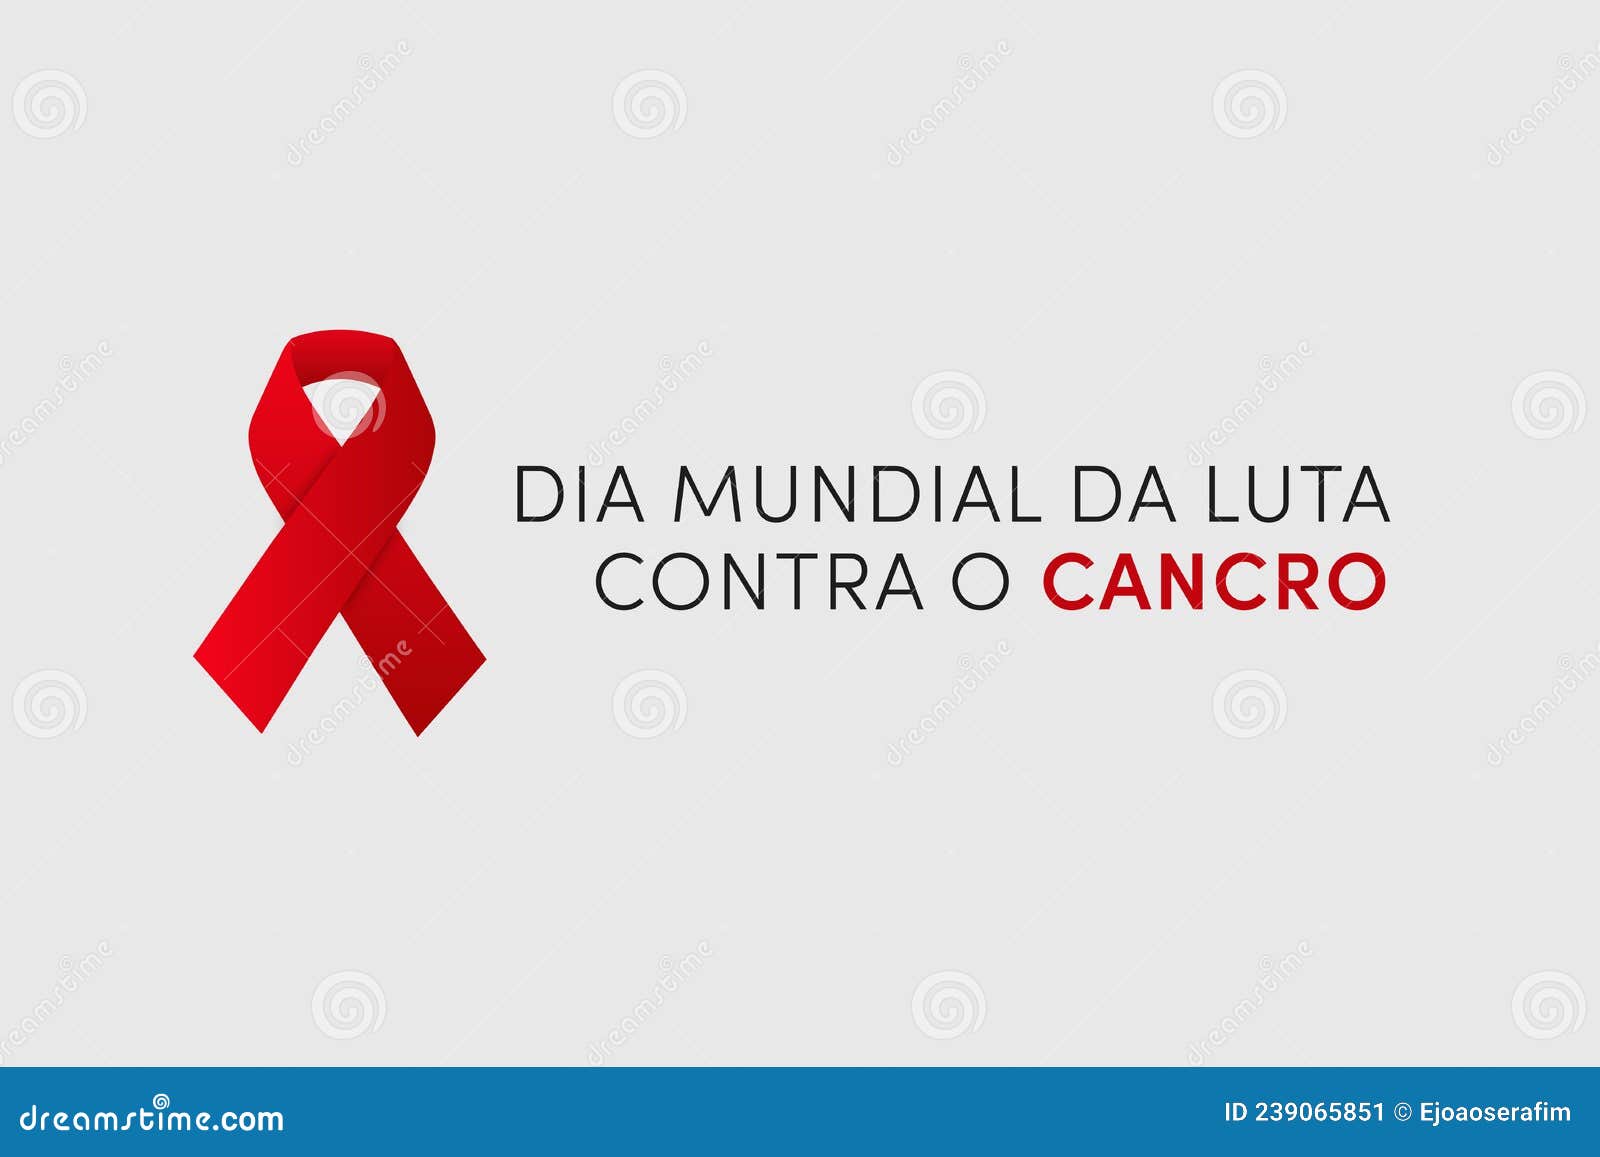 dia mundial da luta contra o cancro. translation: world cancer day